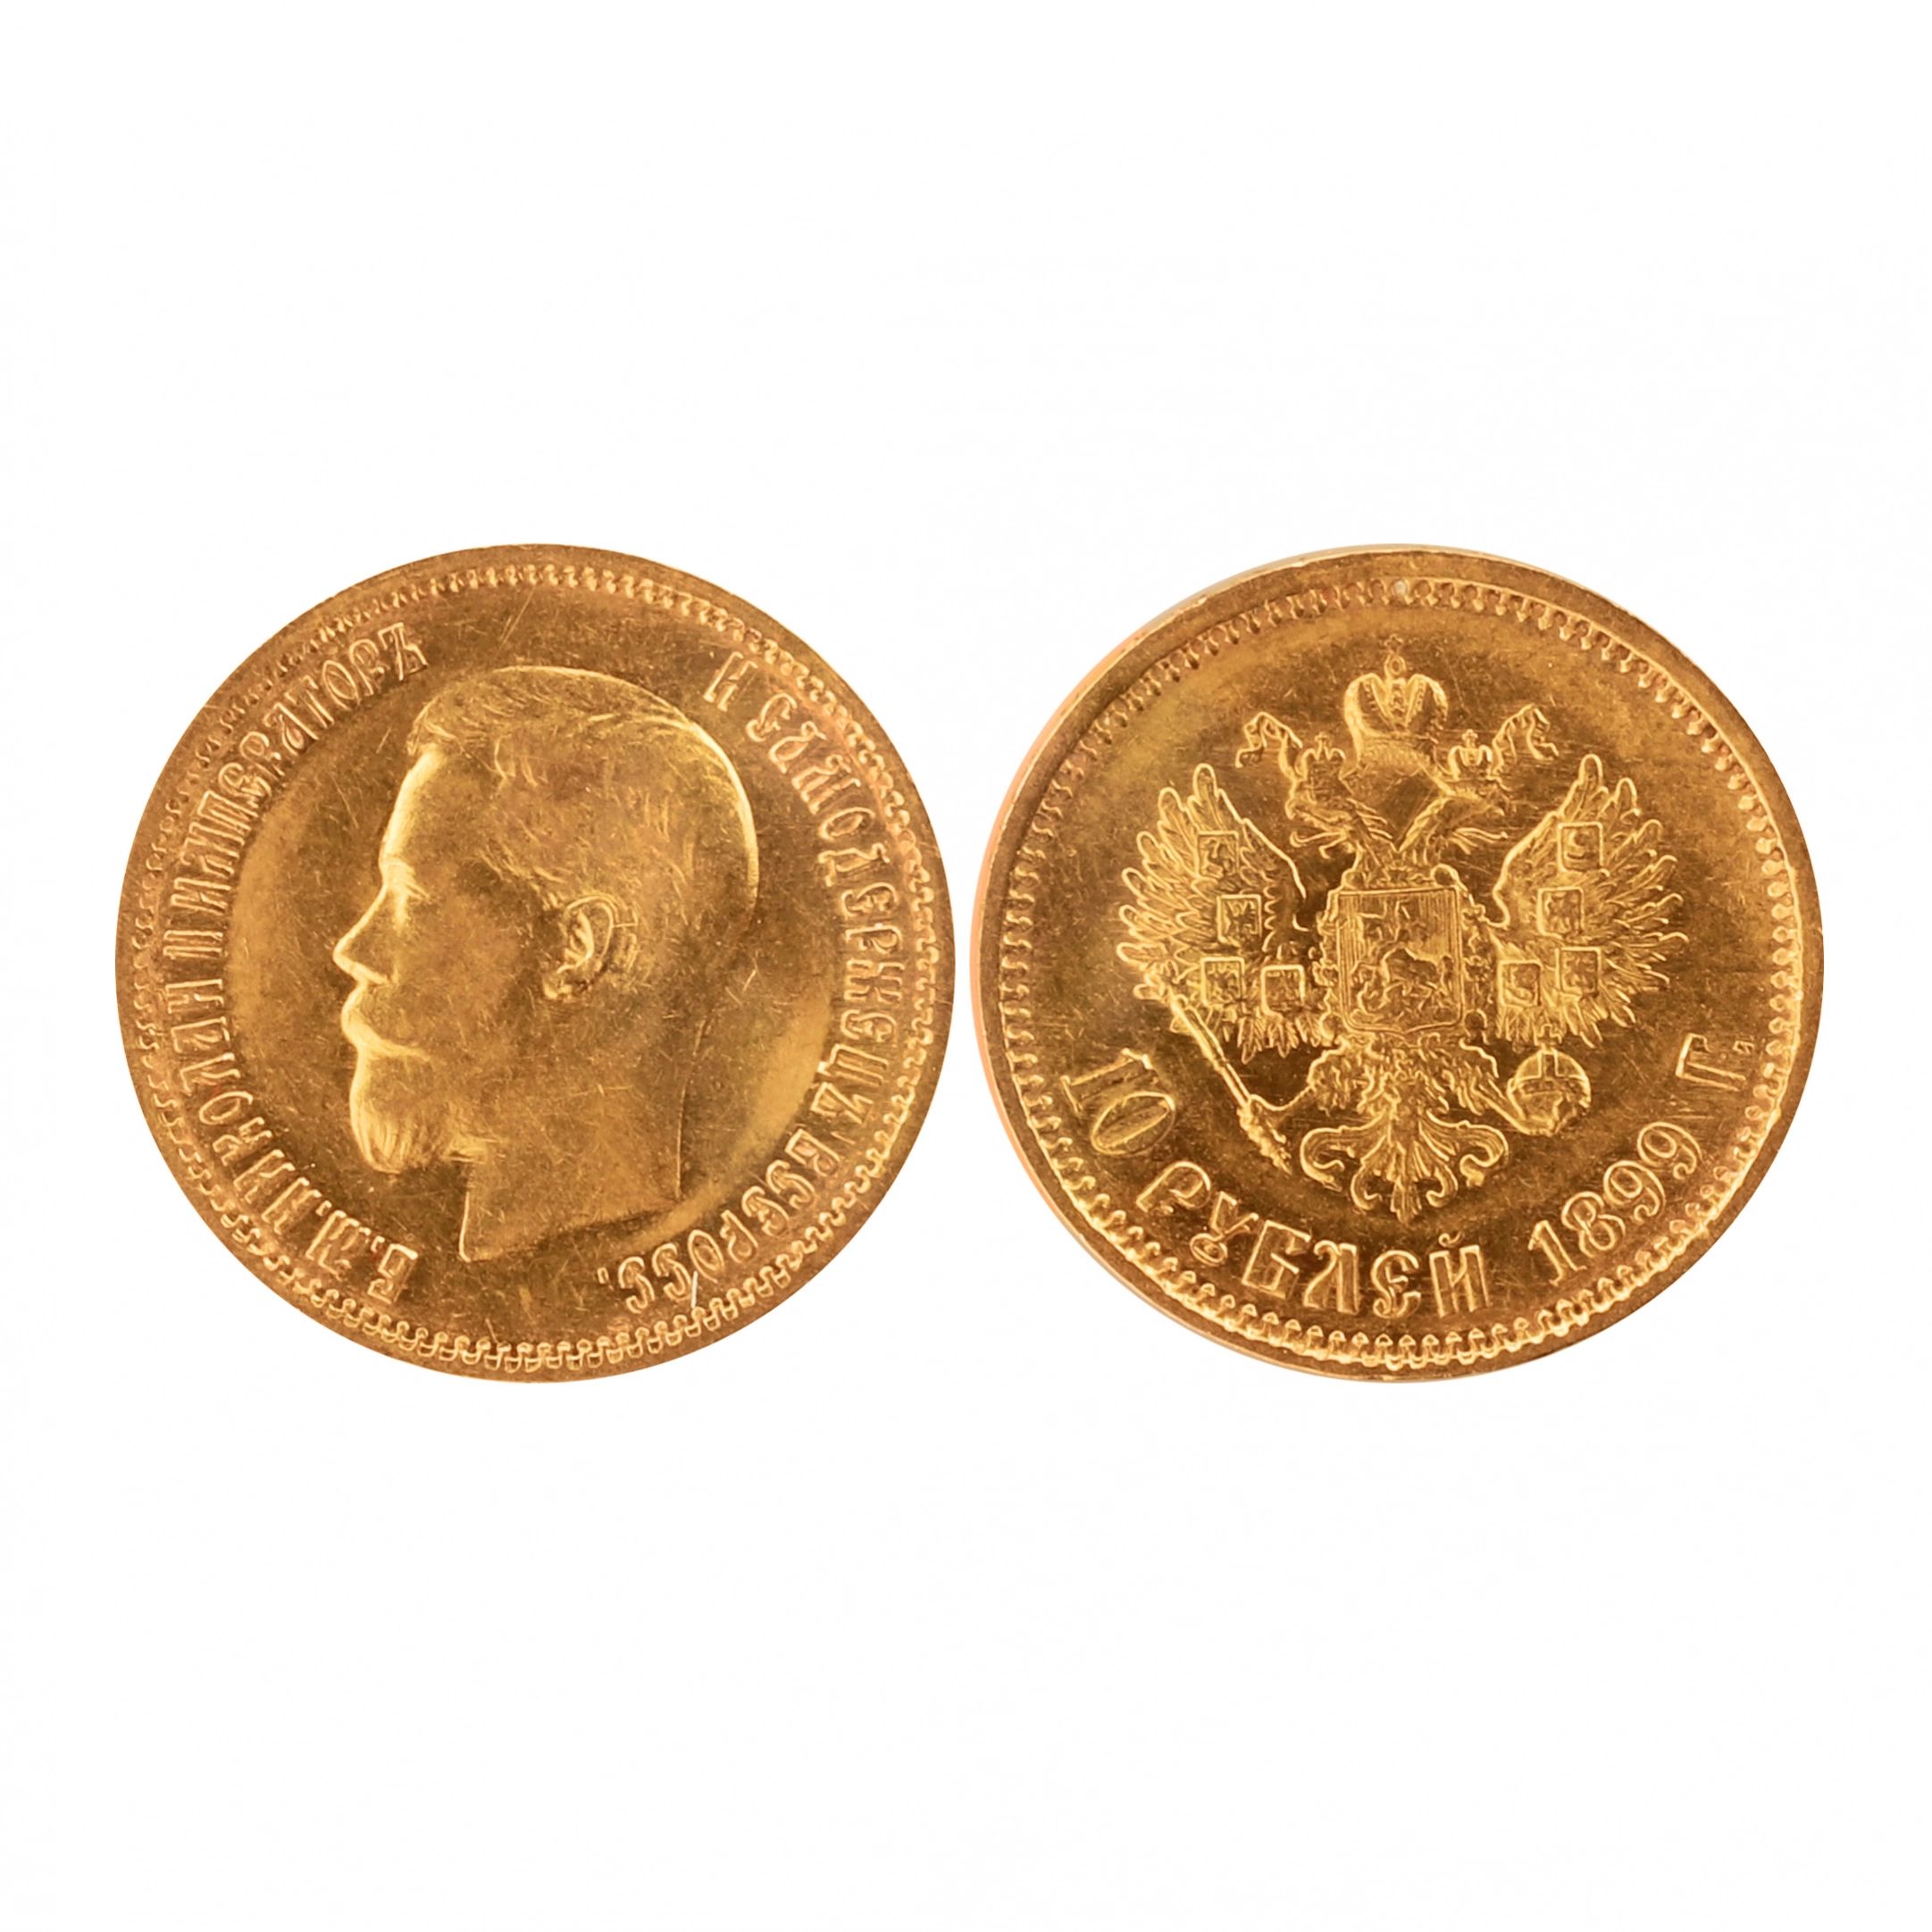 Zelta-10-rublu-moneta-1899